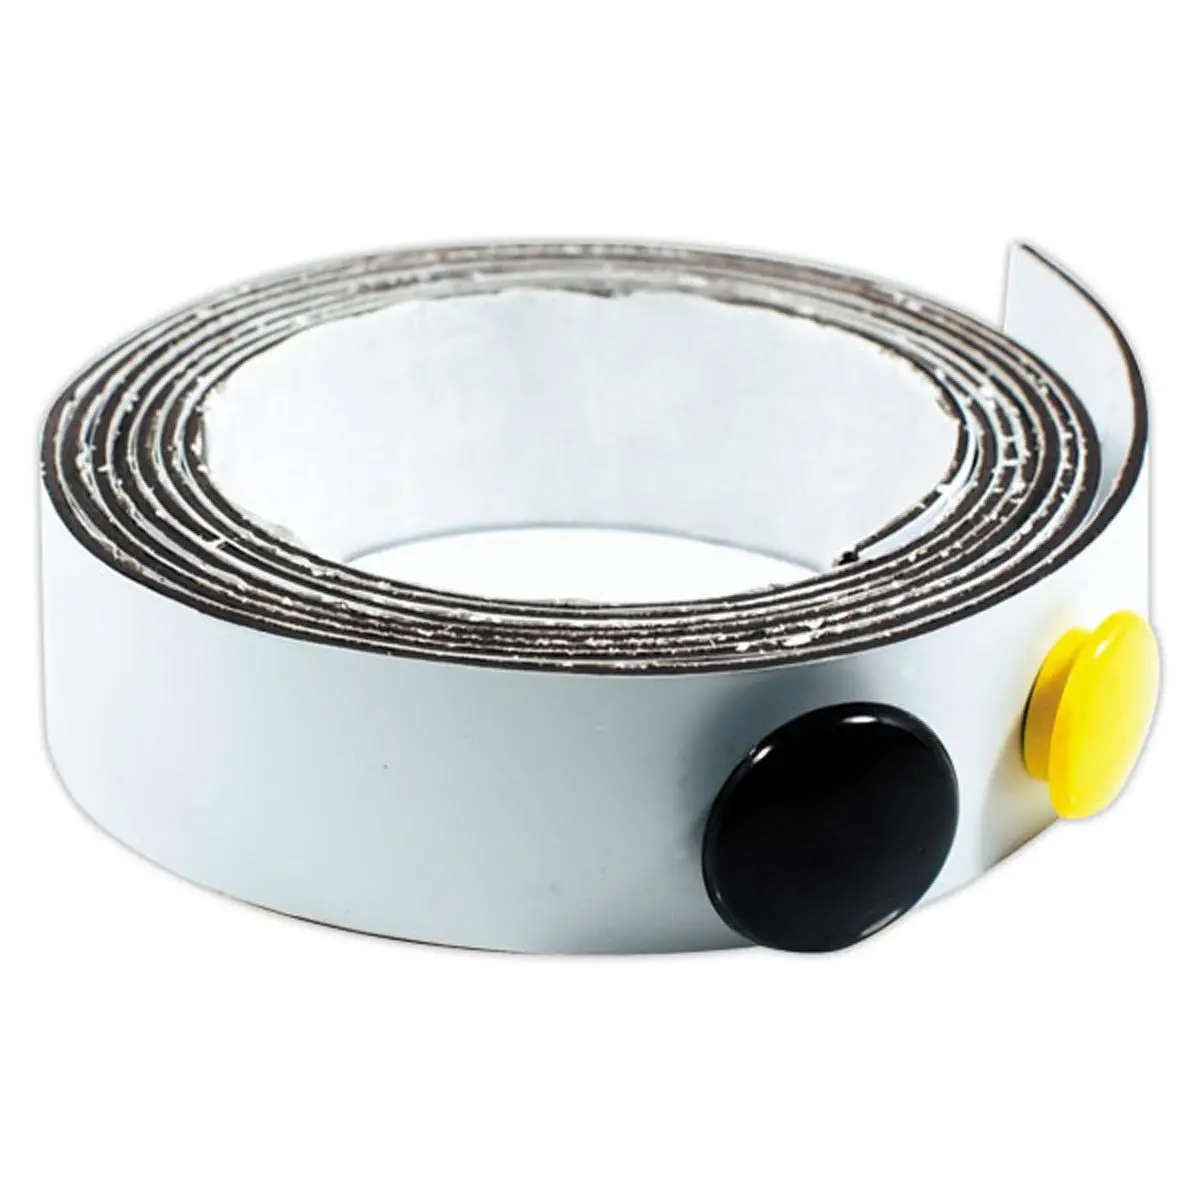 Bande Magnetique - 2,5cm x 7,6m - Etiquette Magnétique - Ruban Adhésif Fort  avec Aimant - Autocollant Magnetique - Rouleau Magnétique pour DIY